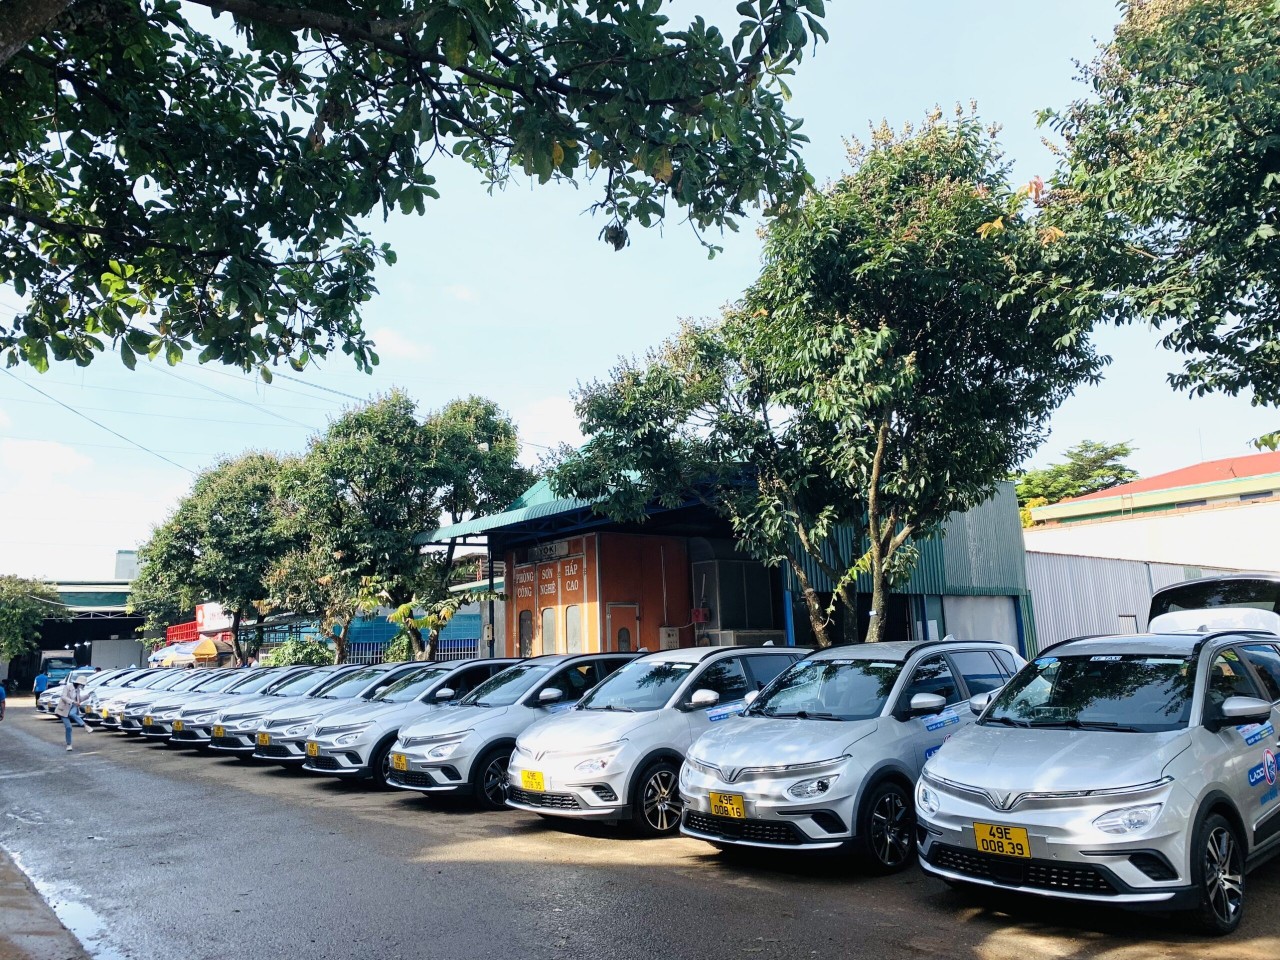 Hãng taxi Lado mua thêm 40 xe VF e34 và thuê 500 ô tô điện VinFast